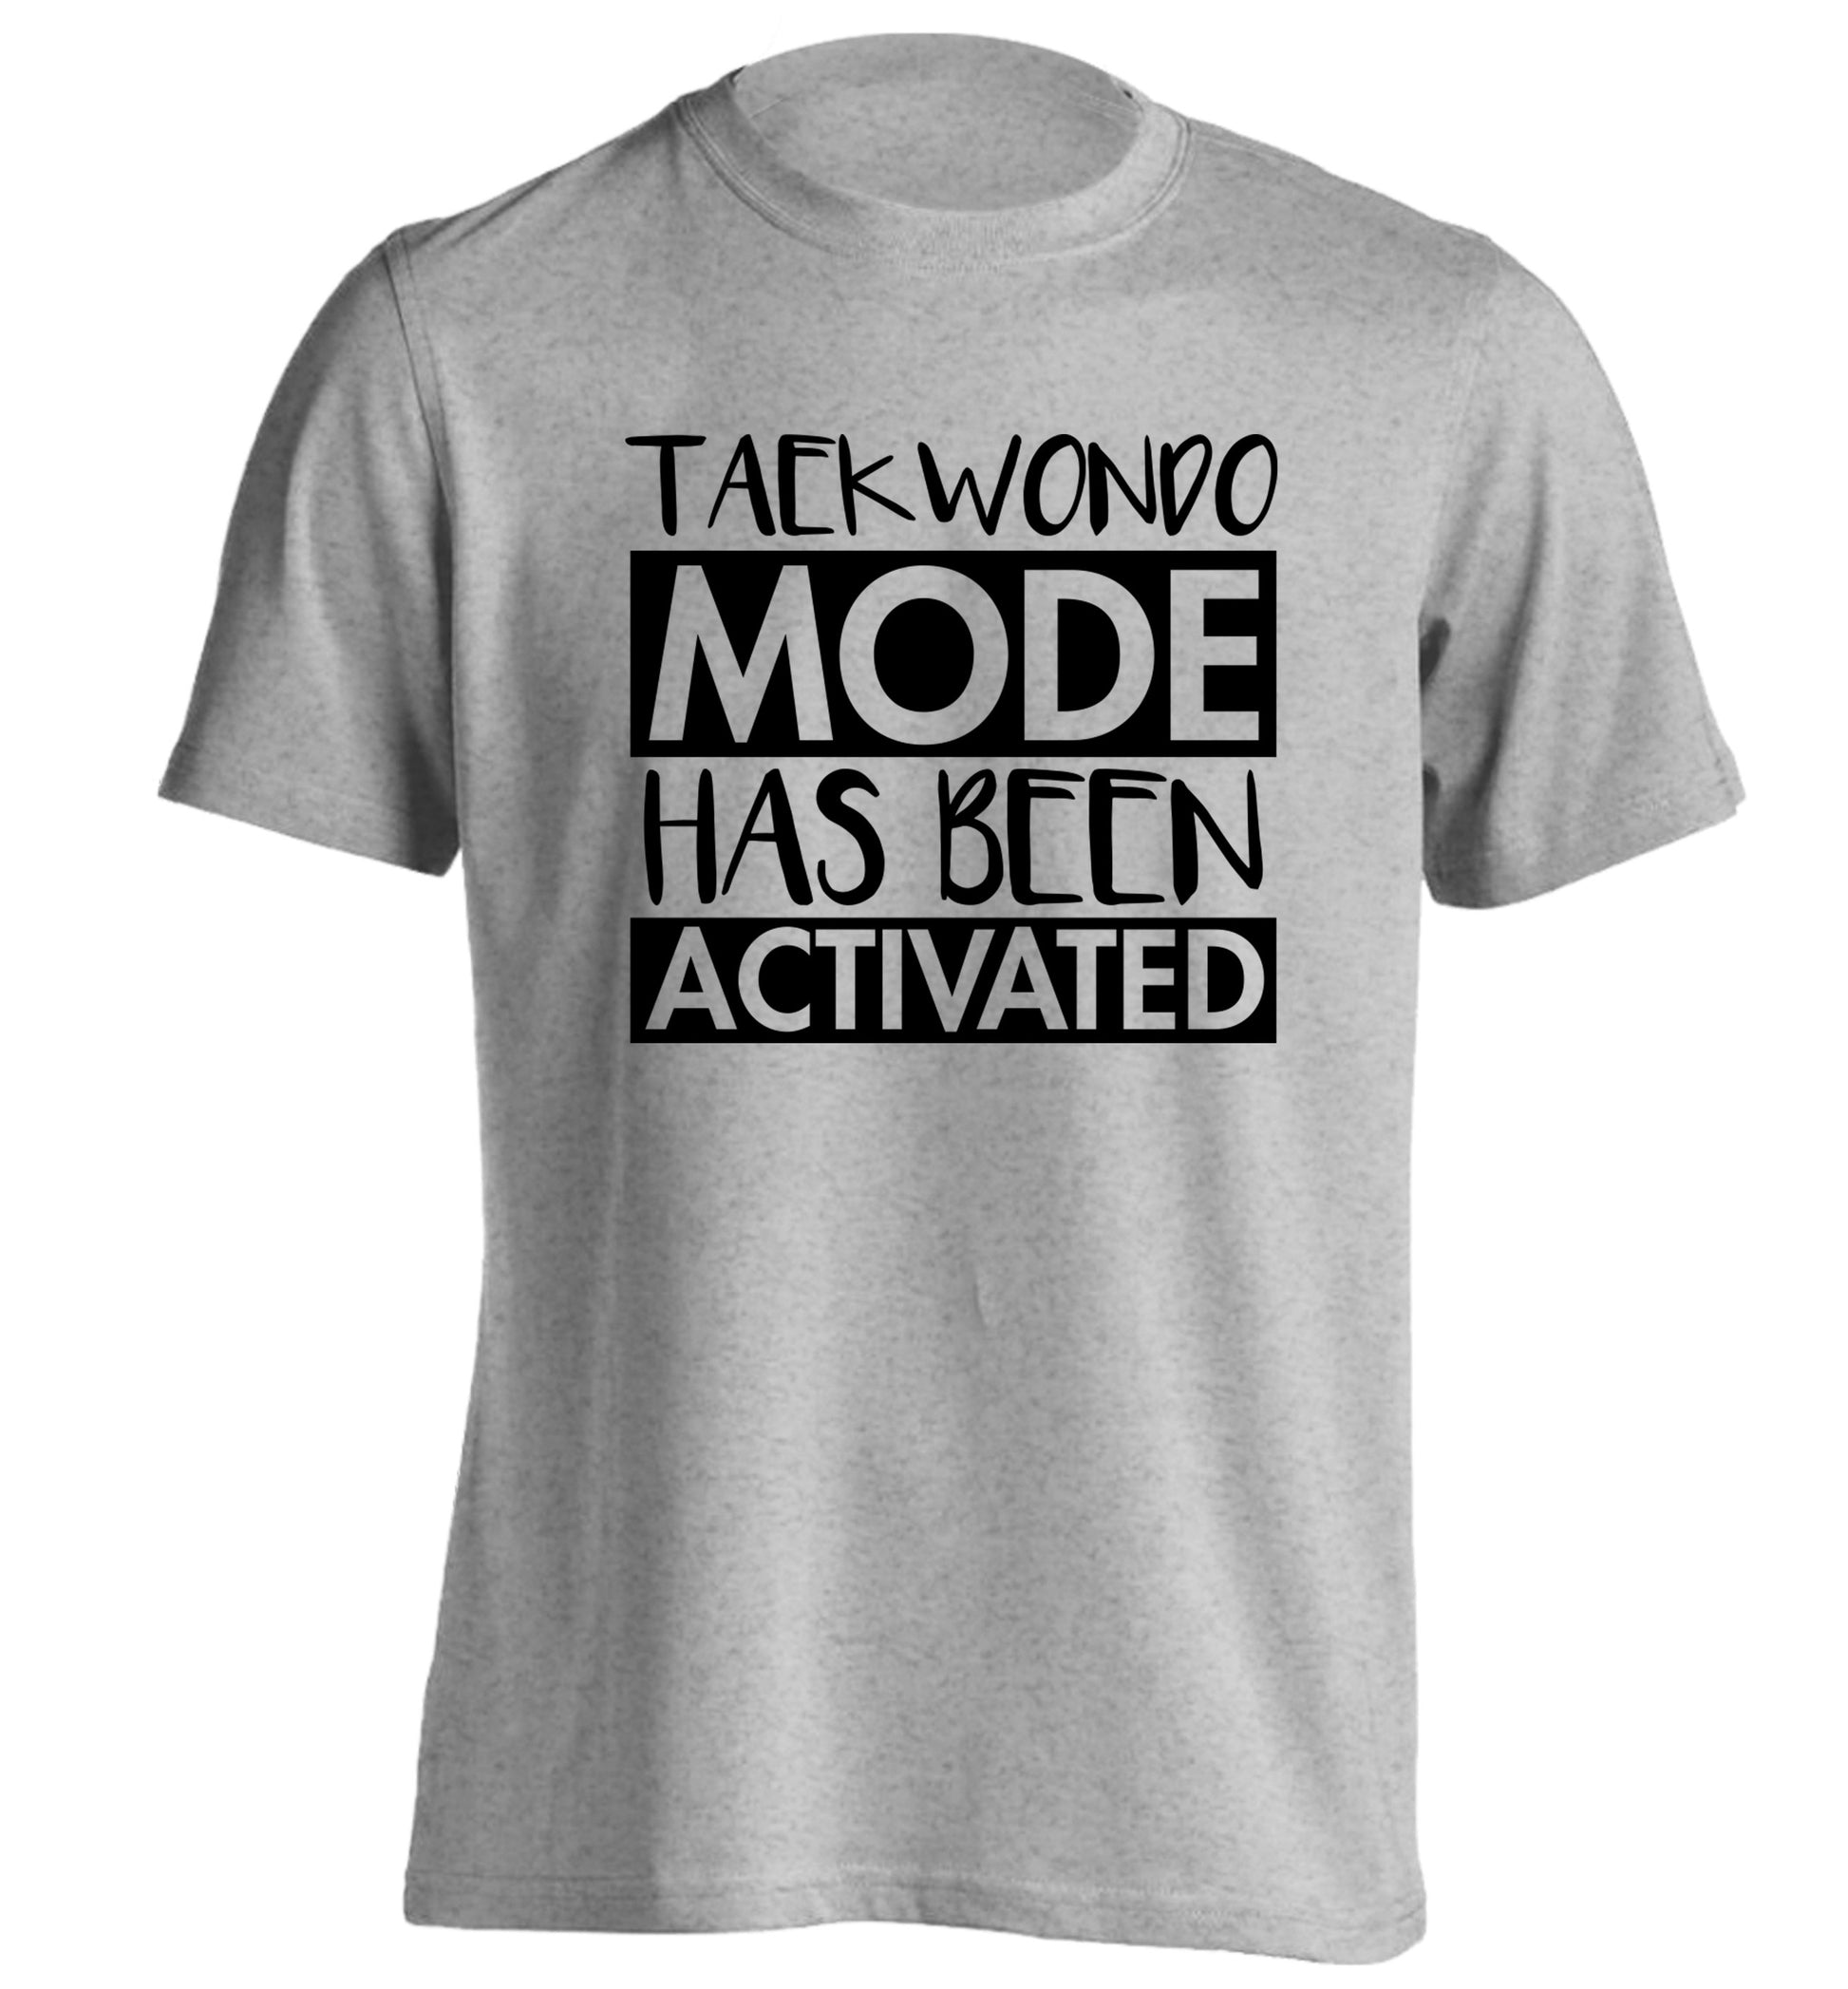 Taekwondo mode activated adults unisex grey Tshirt 2XL